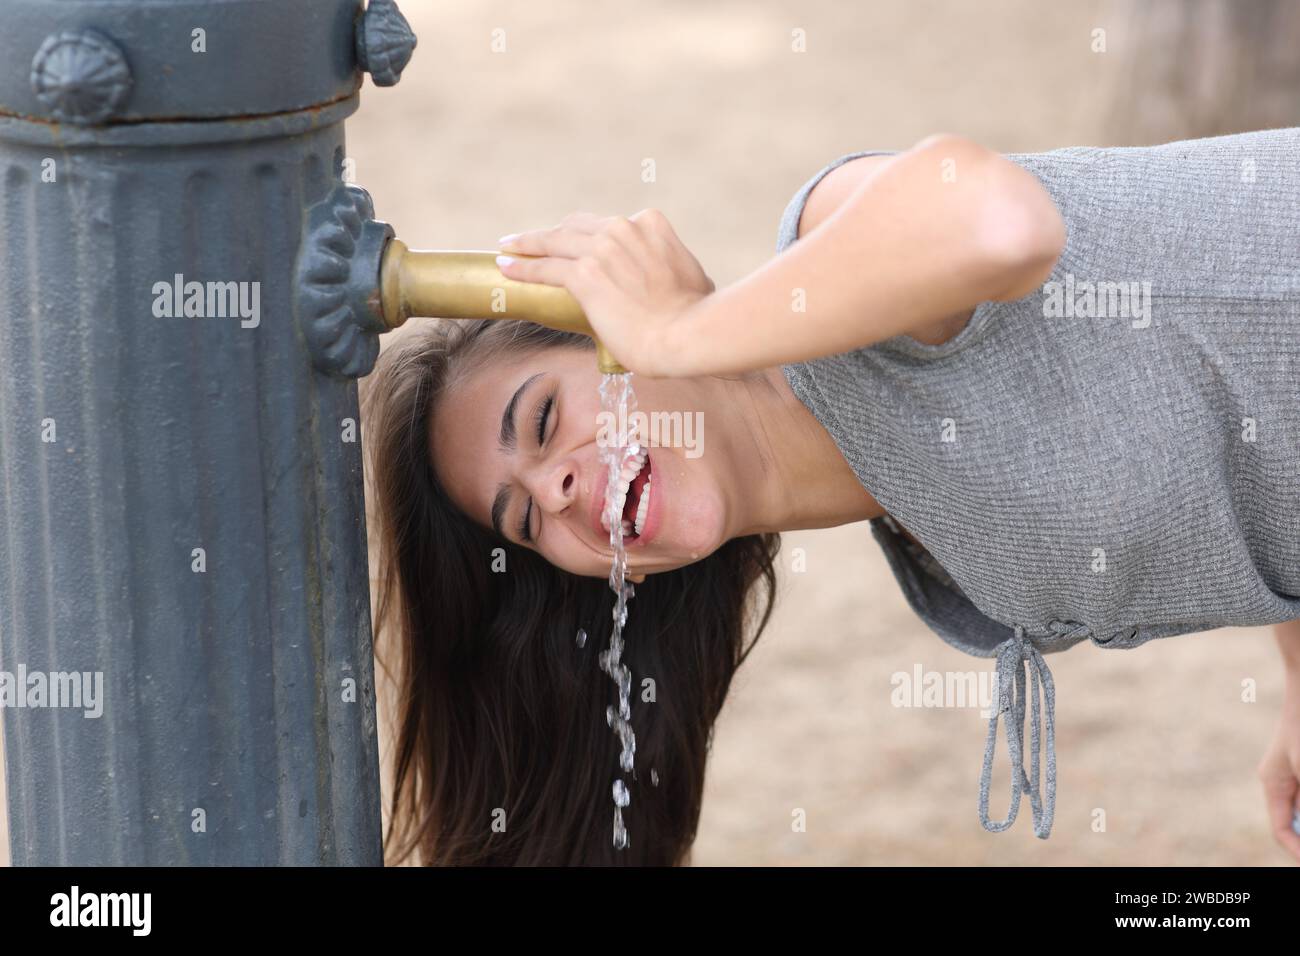 Femme heureuse riant de l'eau potable de fontaine publique dans un parc Banque D'Images